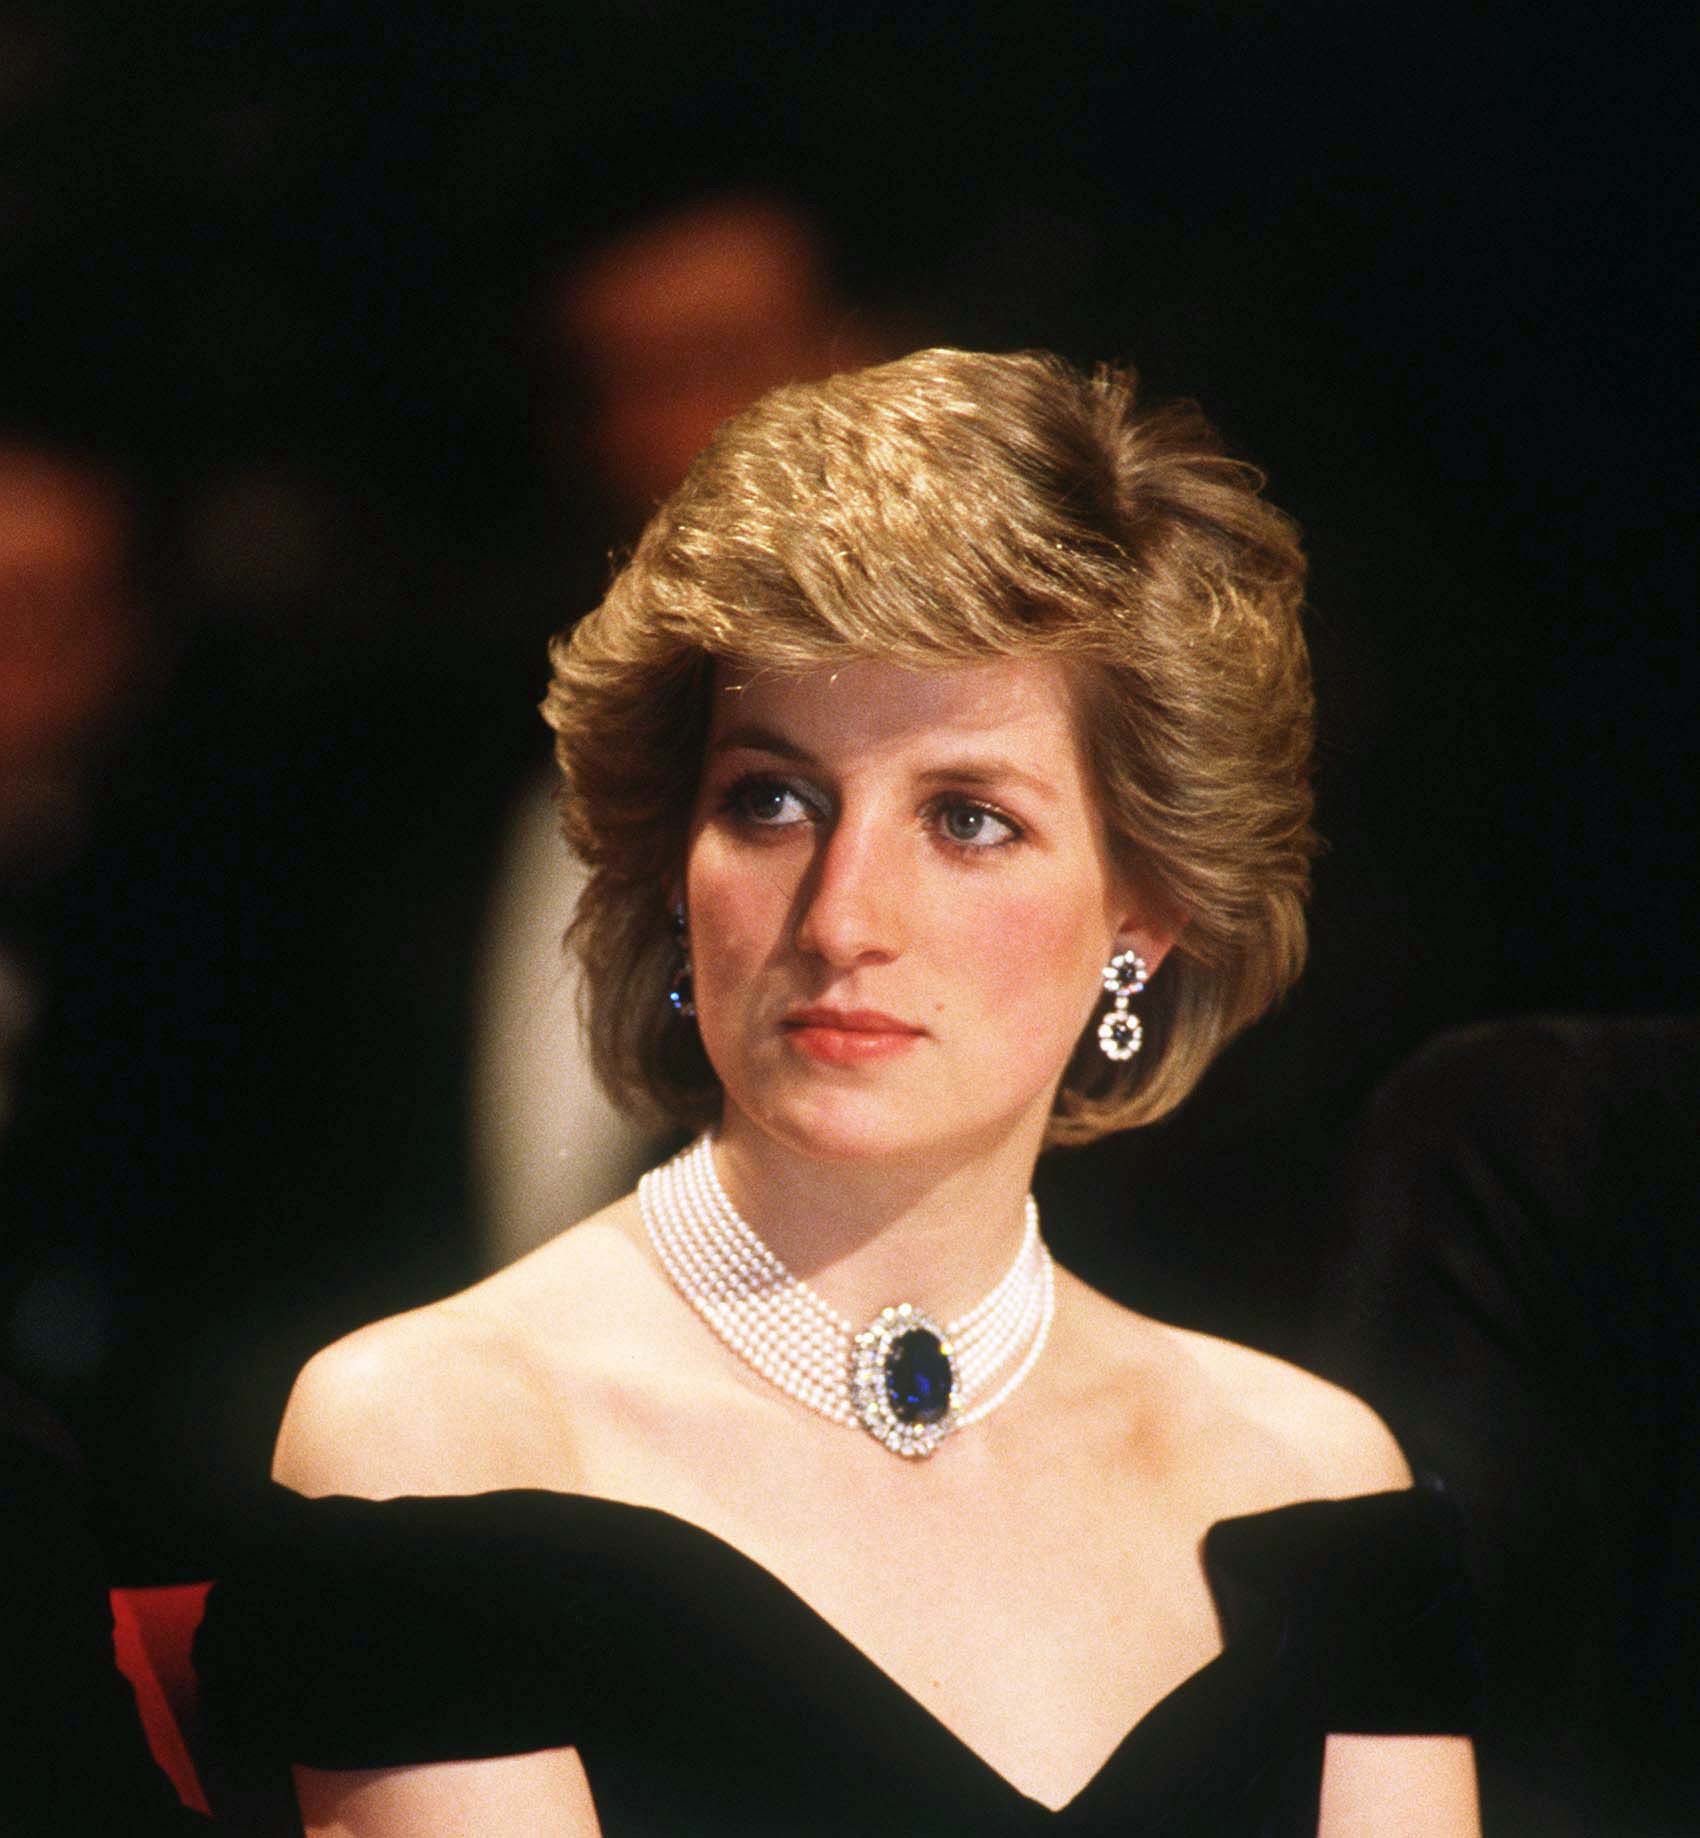 Diana, Prinzessin von Wales, trägt ein von Victor Edelstein entworfenes Kleid bei einem Staatsbankett in Wien, Österreich, am 16. April 1986 | Quelle: Getty Images